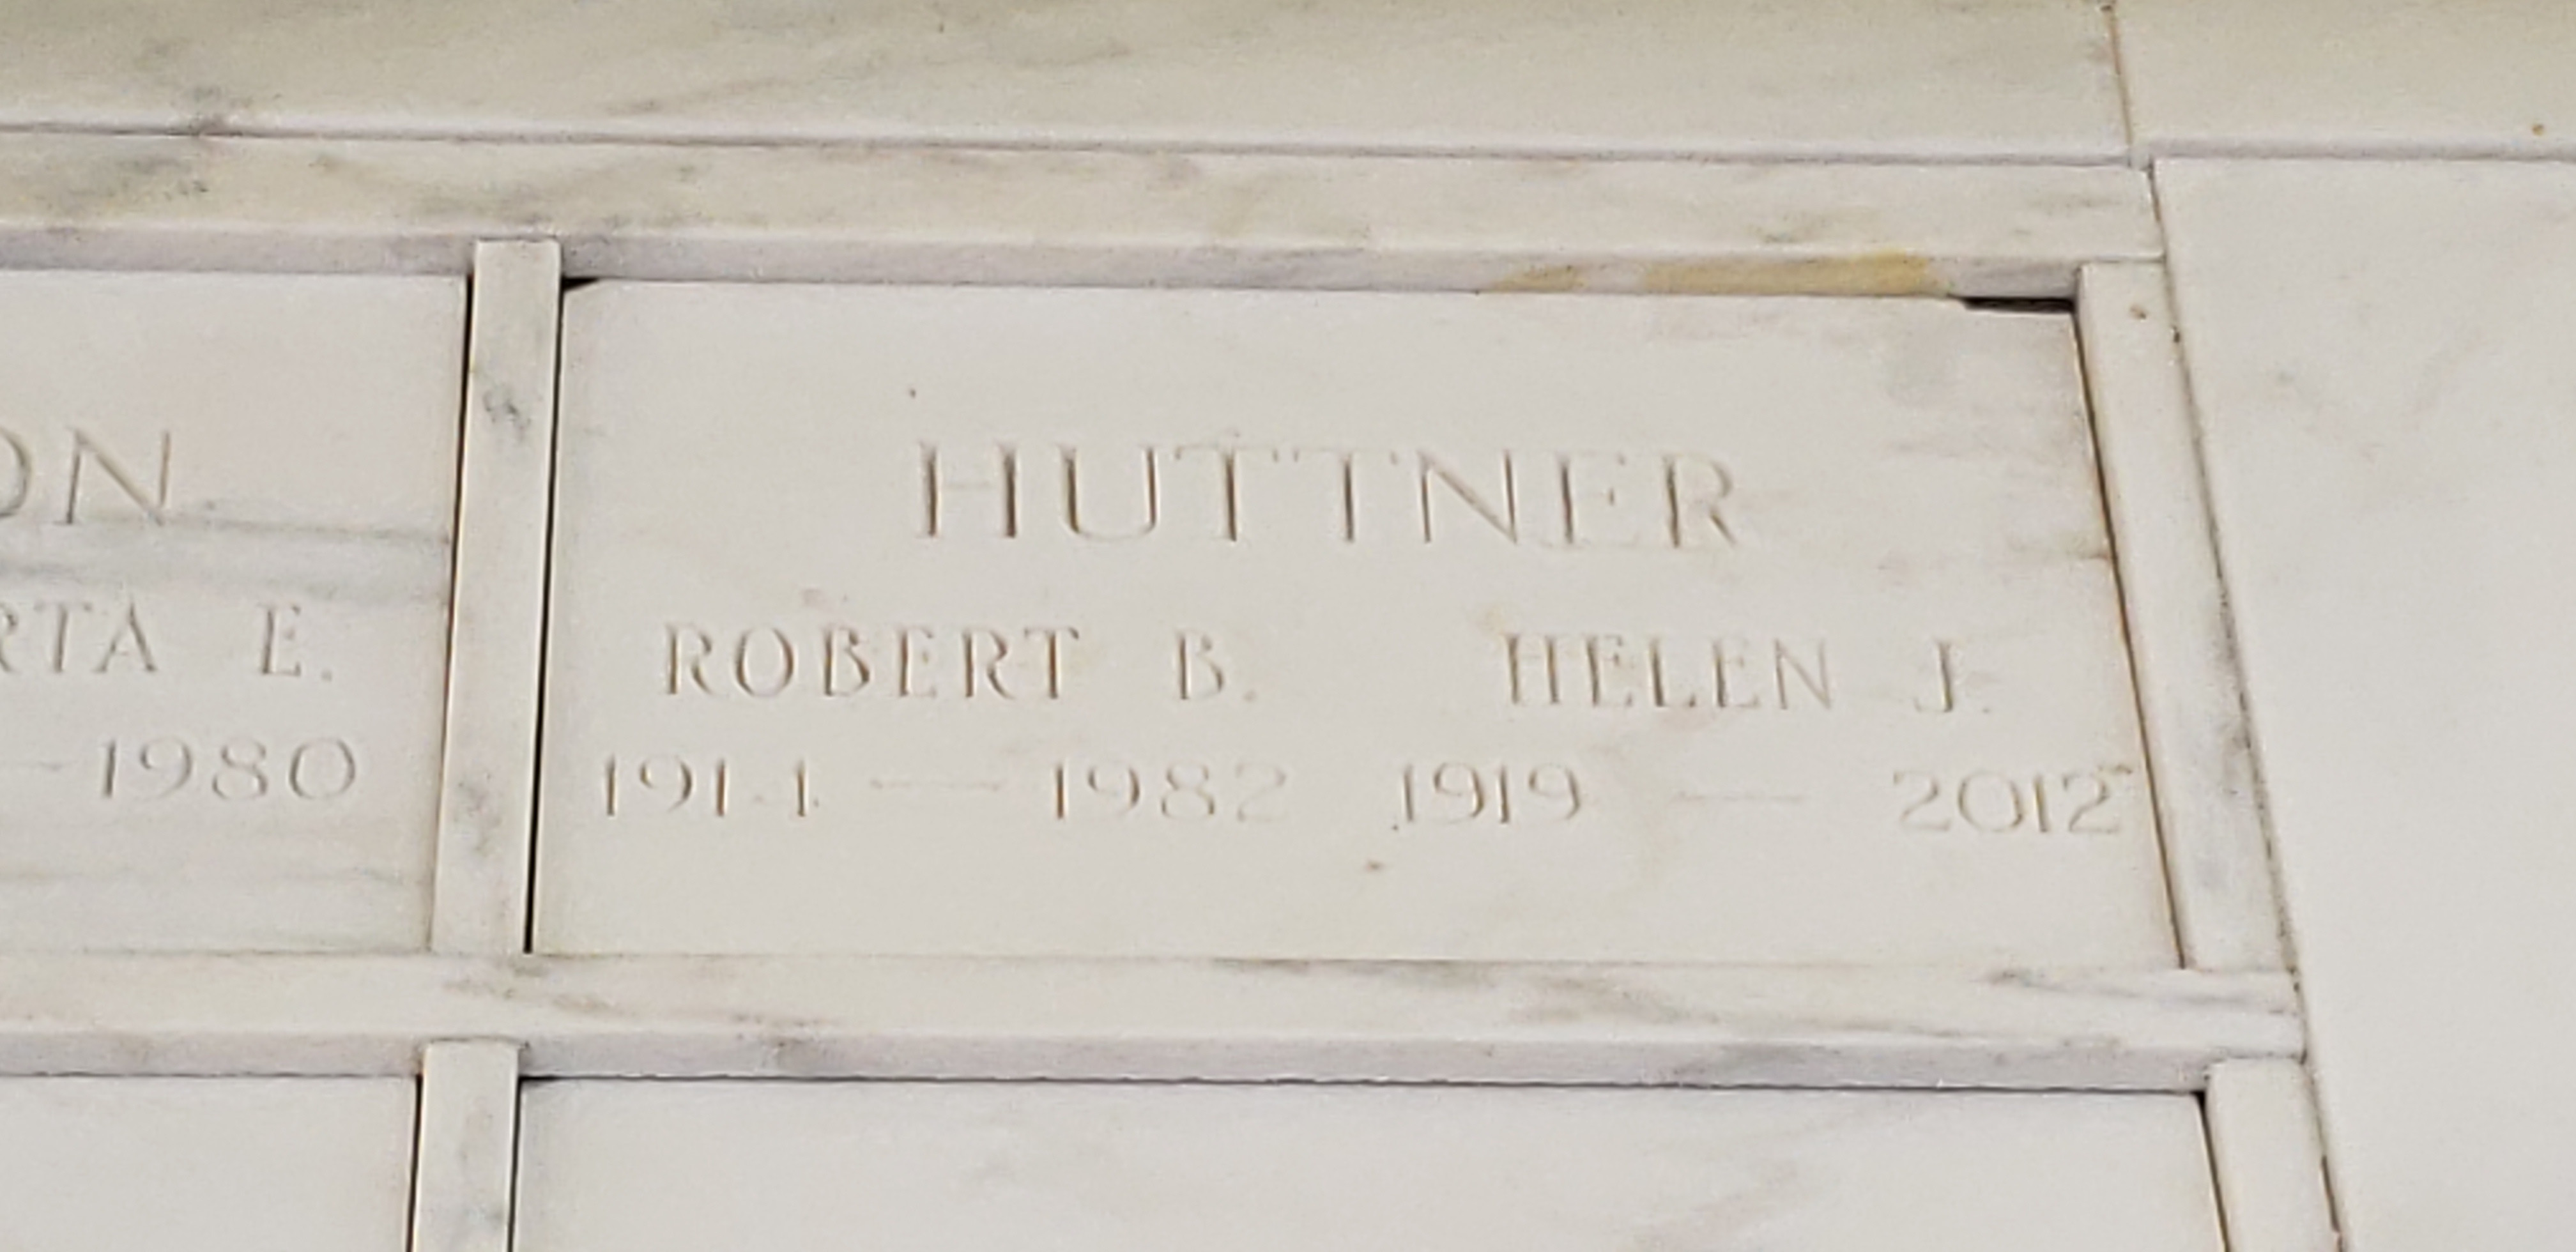 Robert B Huttner